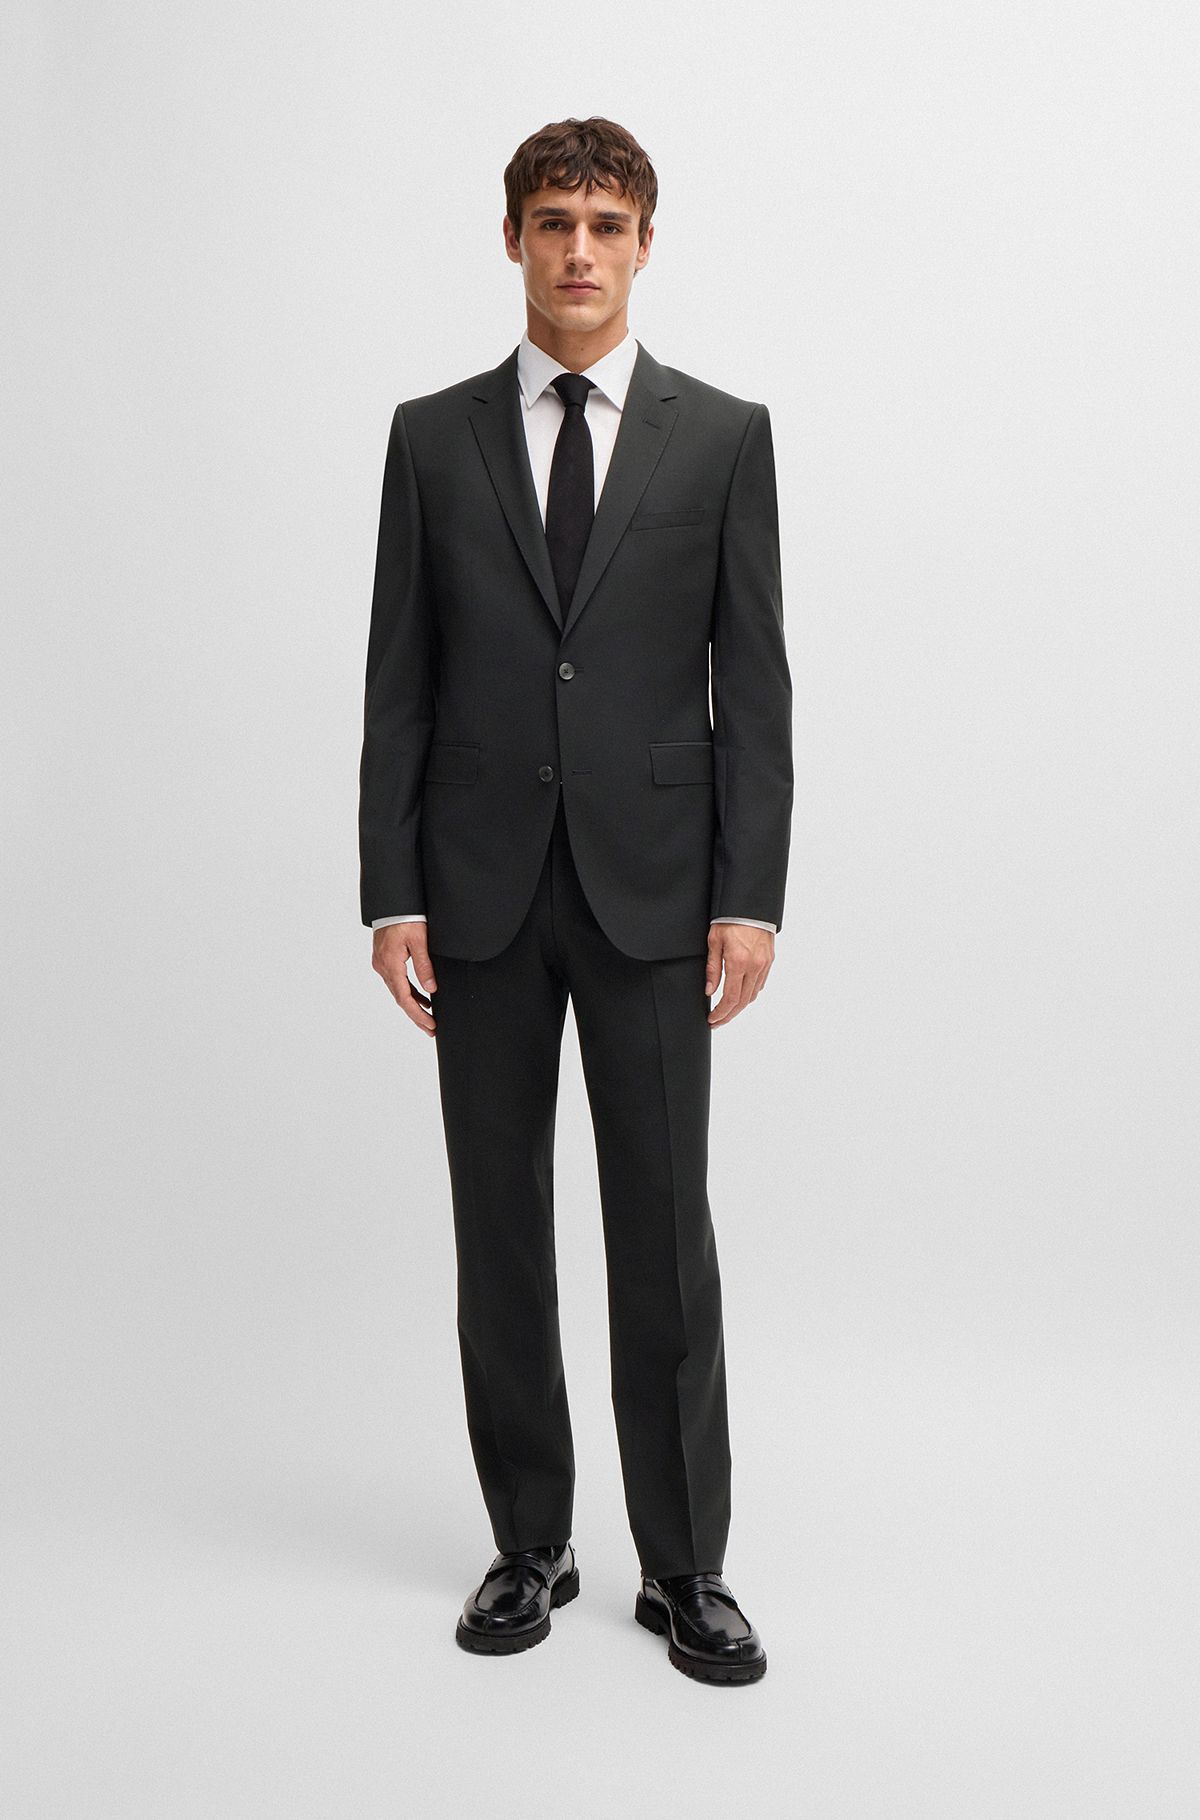 Elegant Suits for Men | Men's Designer Suits by HUGO BOSS